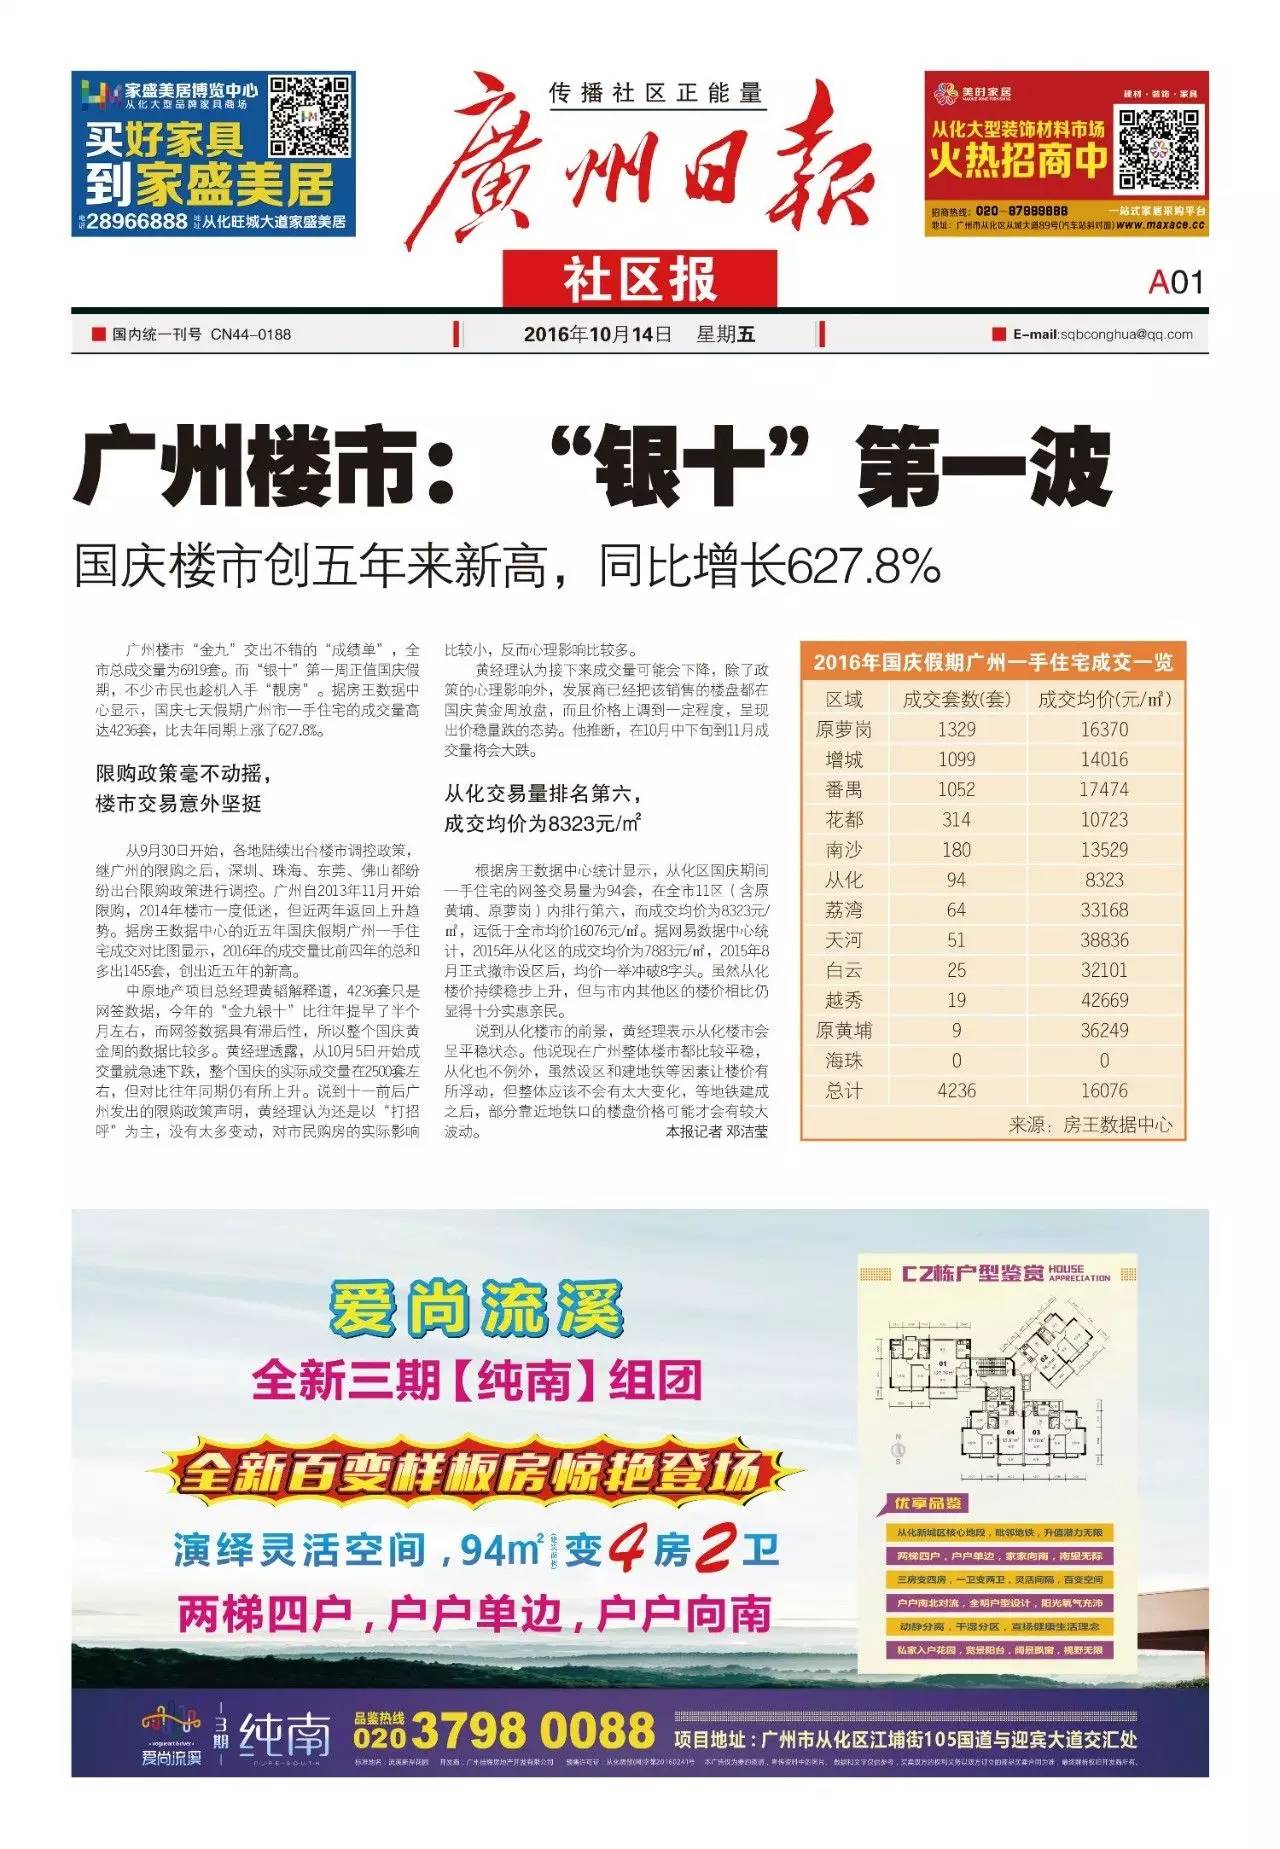 【阅报】2016年10月14日第143期广州日报社区报电子版